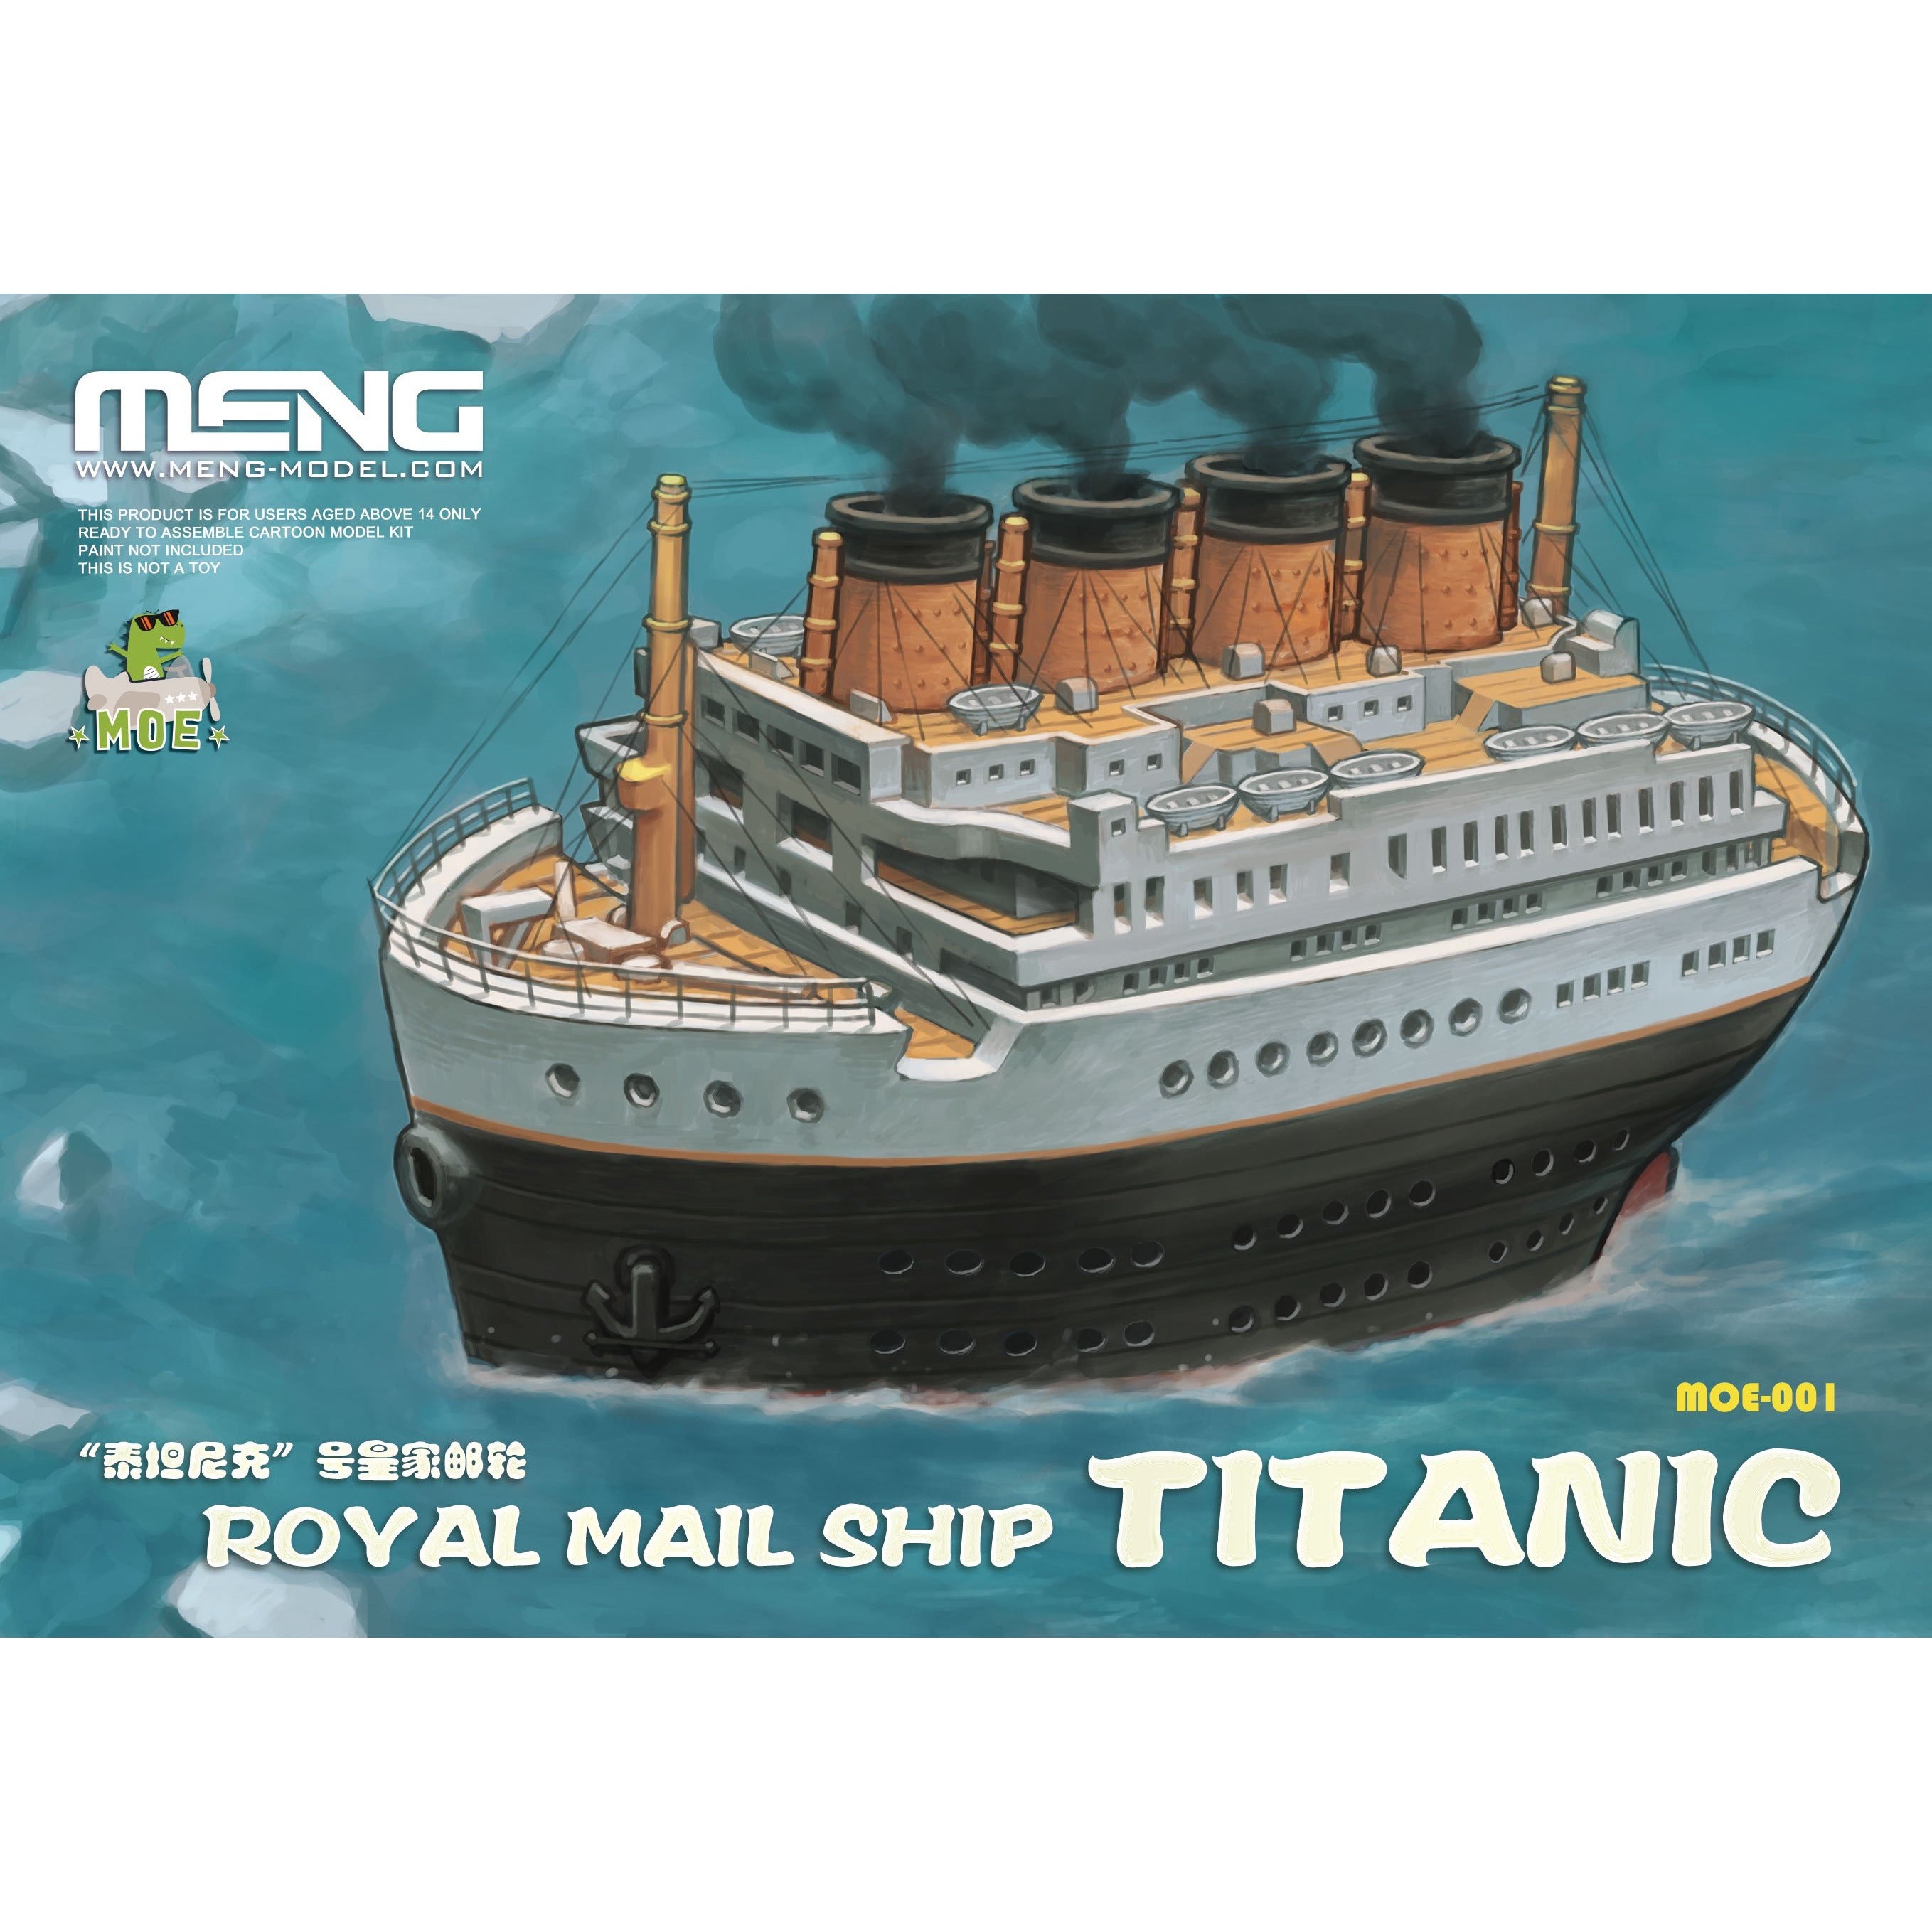 Titanic Royal Mail Ship #MOE-001 Super Deformed Model Kit by Meng